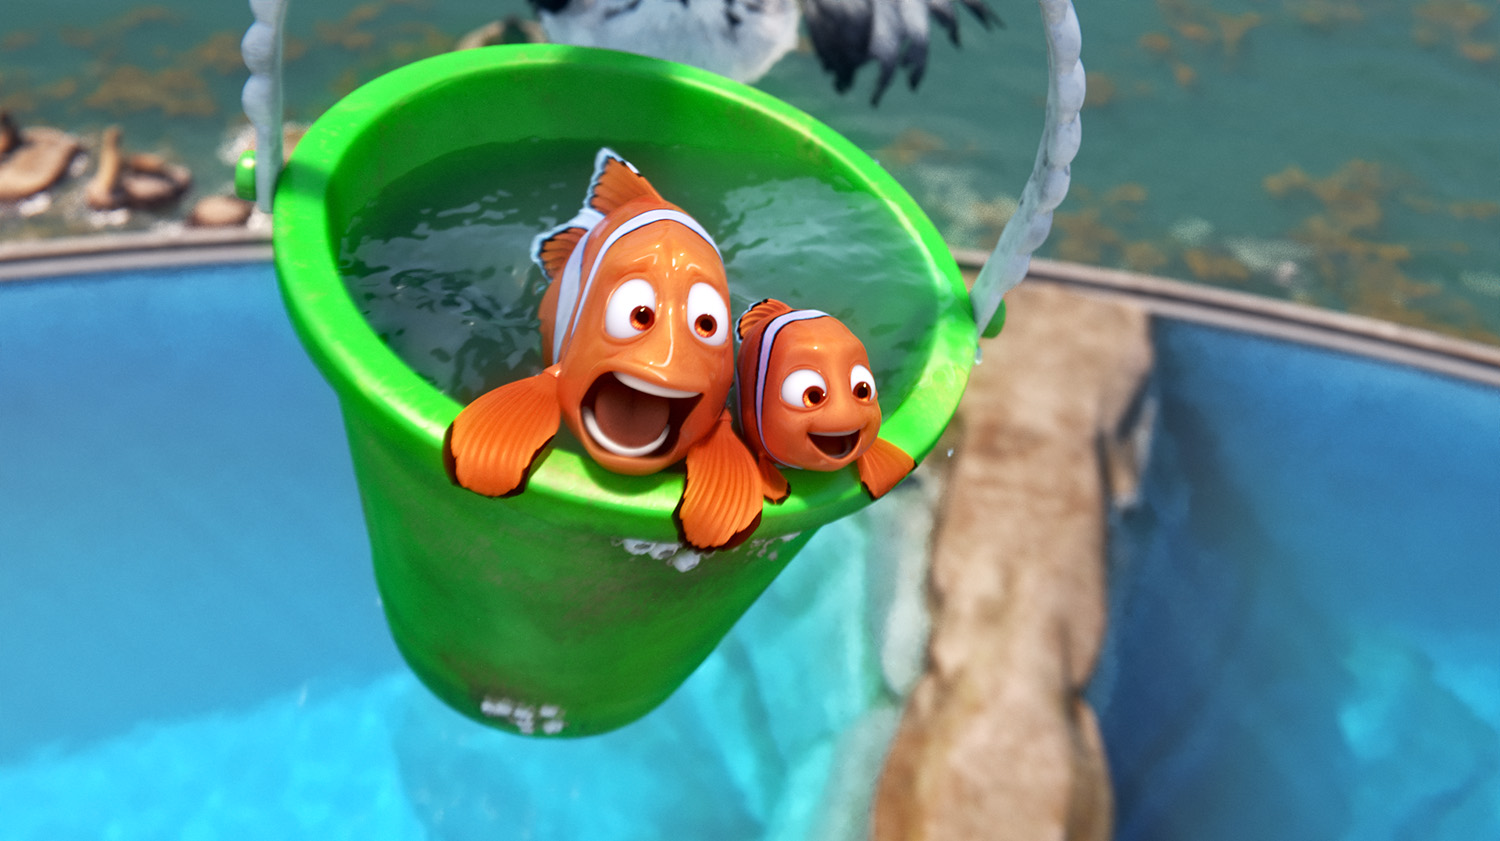 Finding Nemo Marlin Pixar